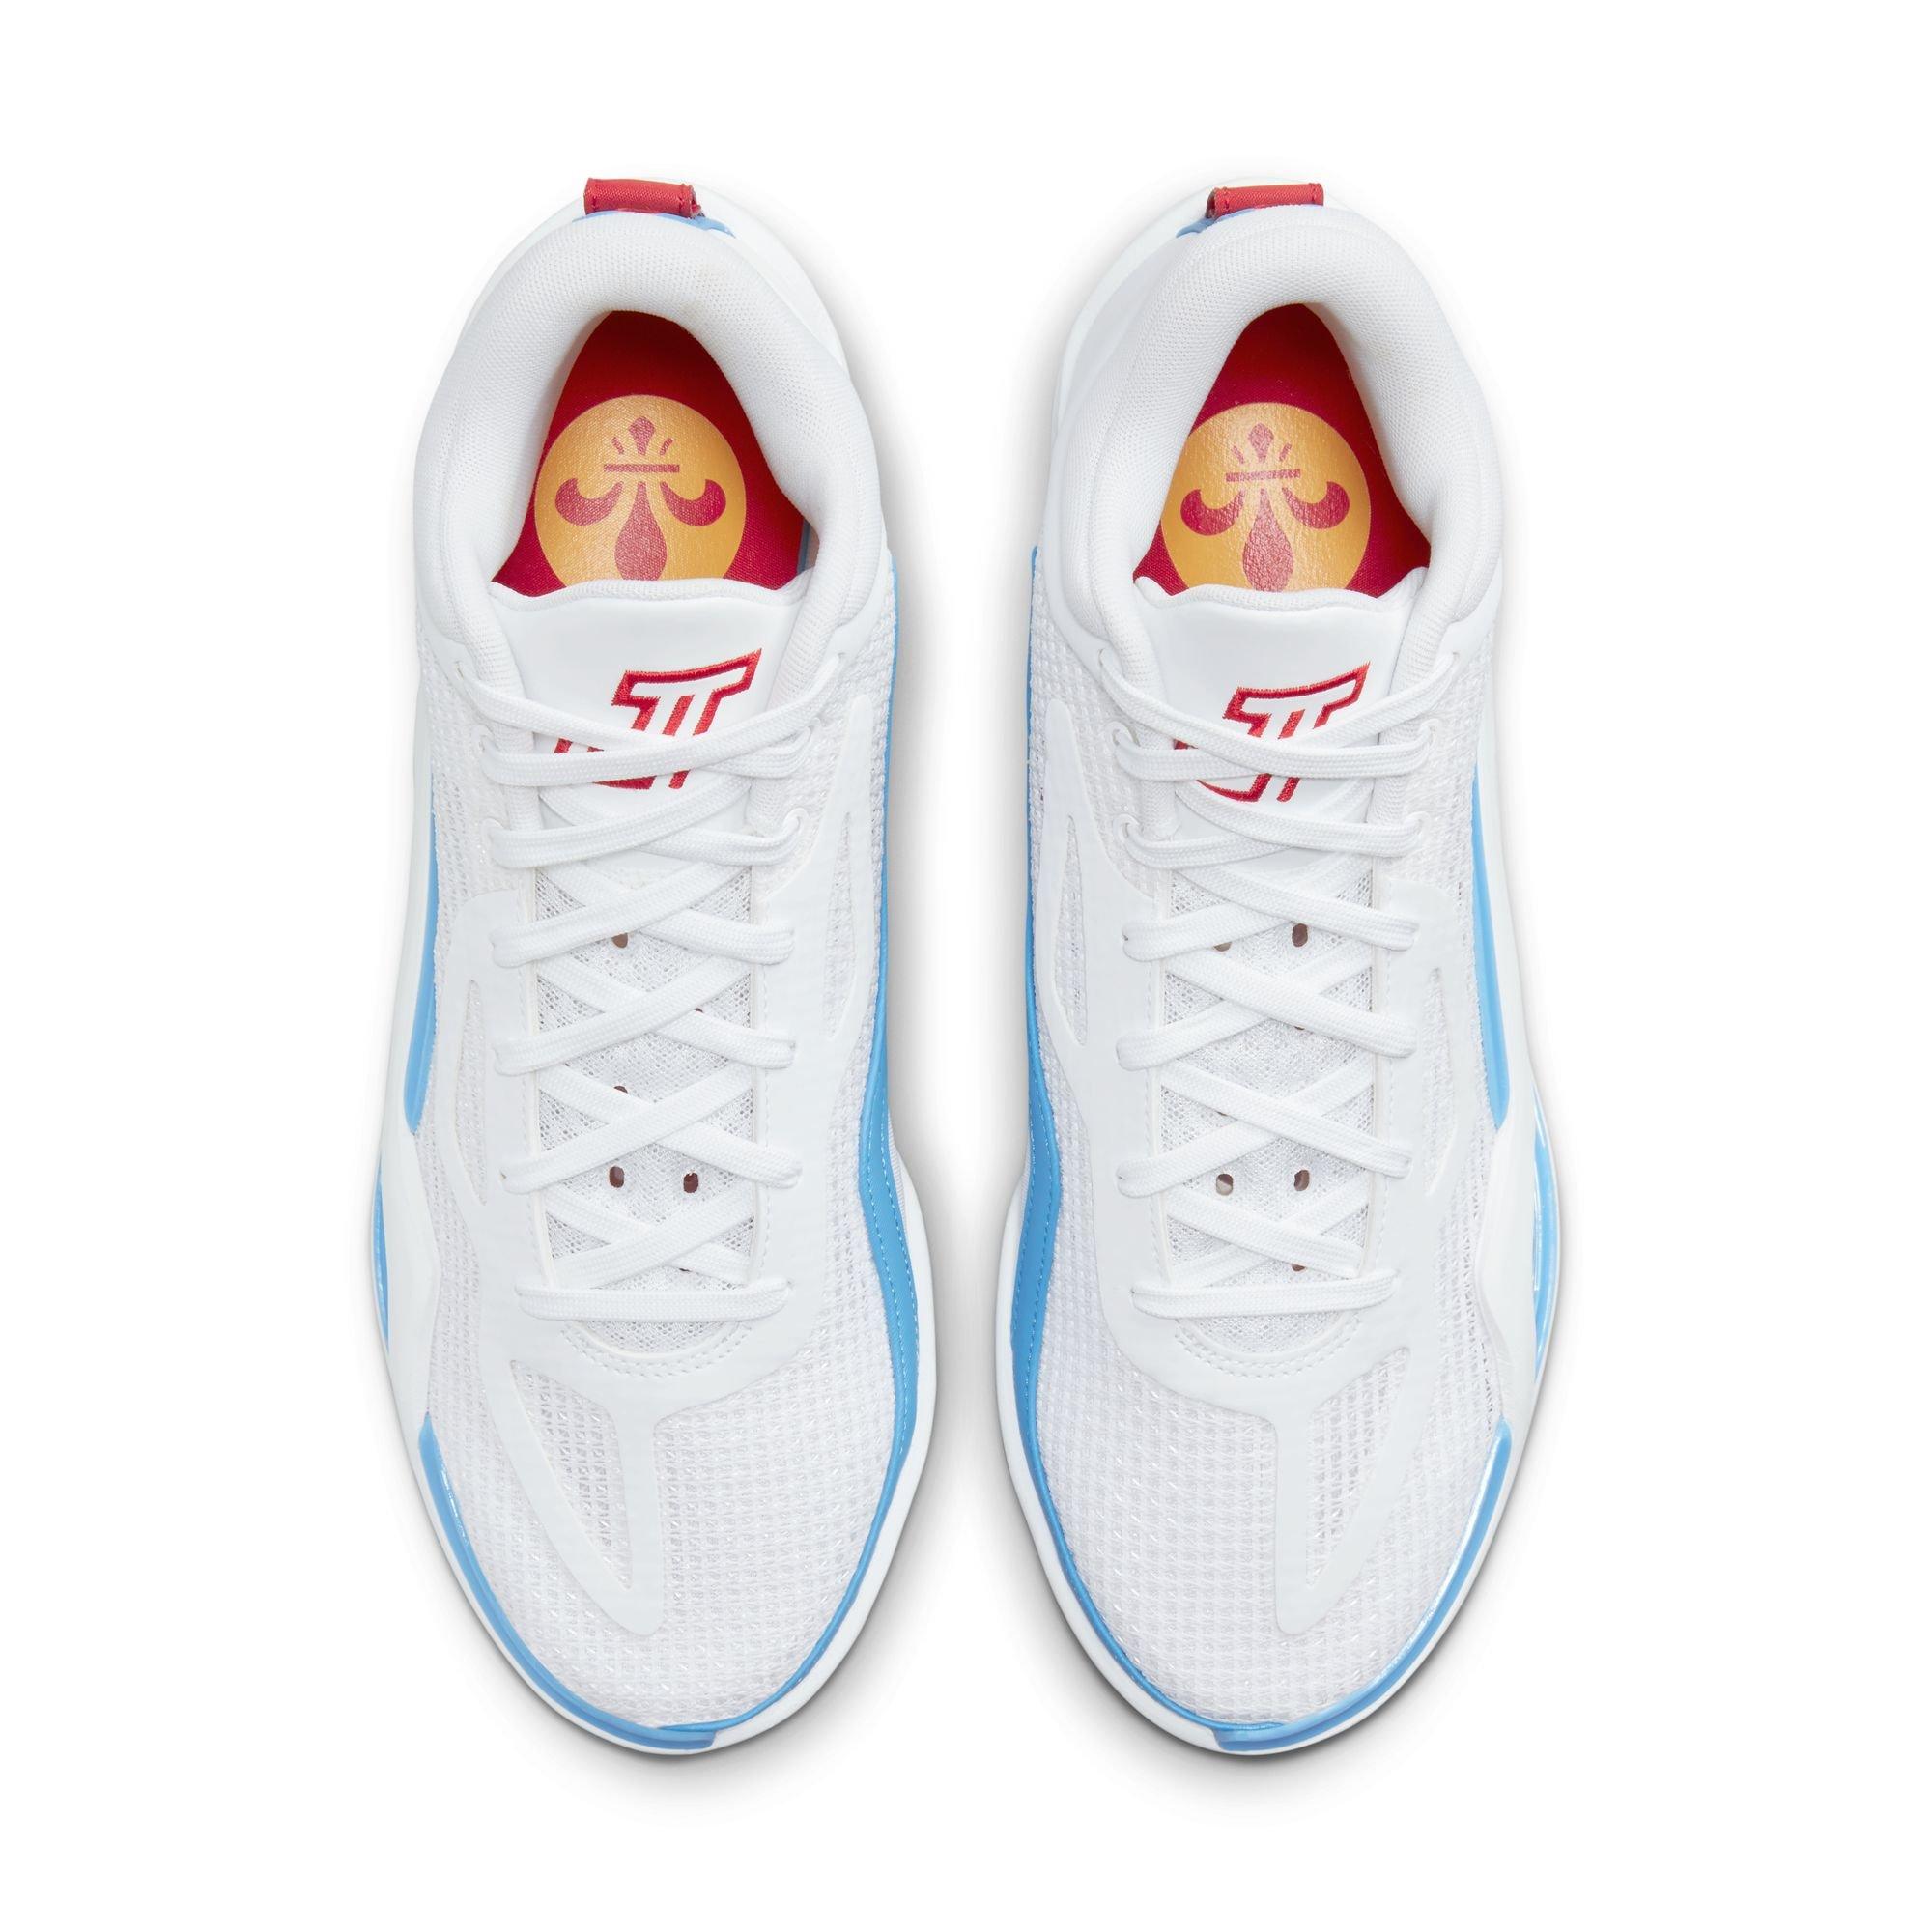 Nike X Jayson Tatum Jt1 st. Louis Sneakers in Blue for Men